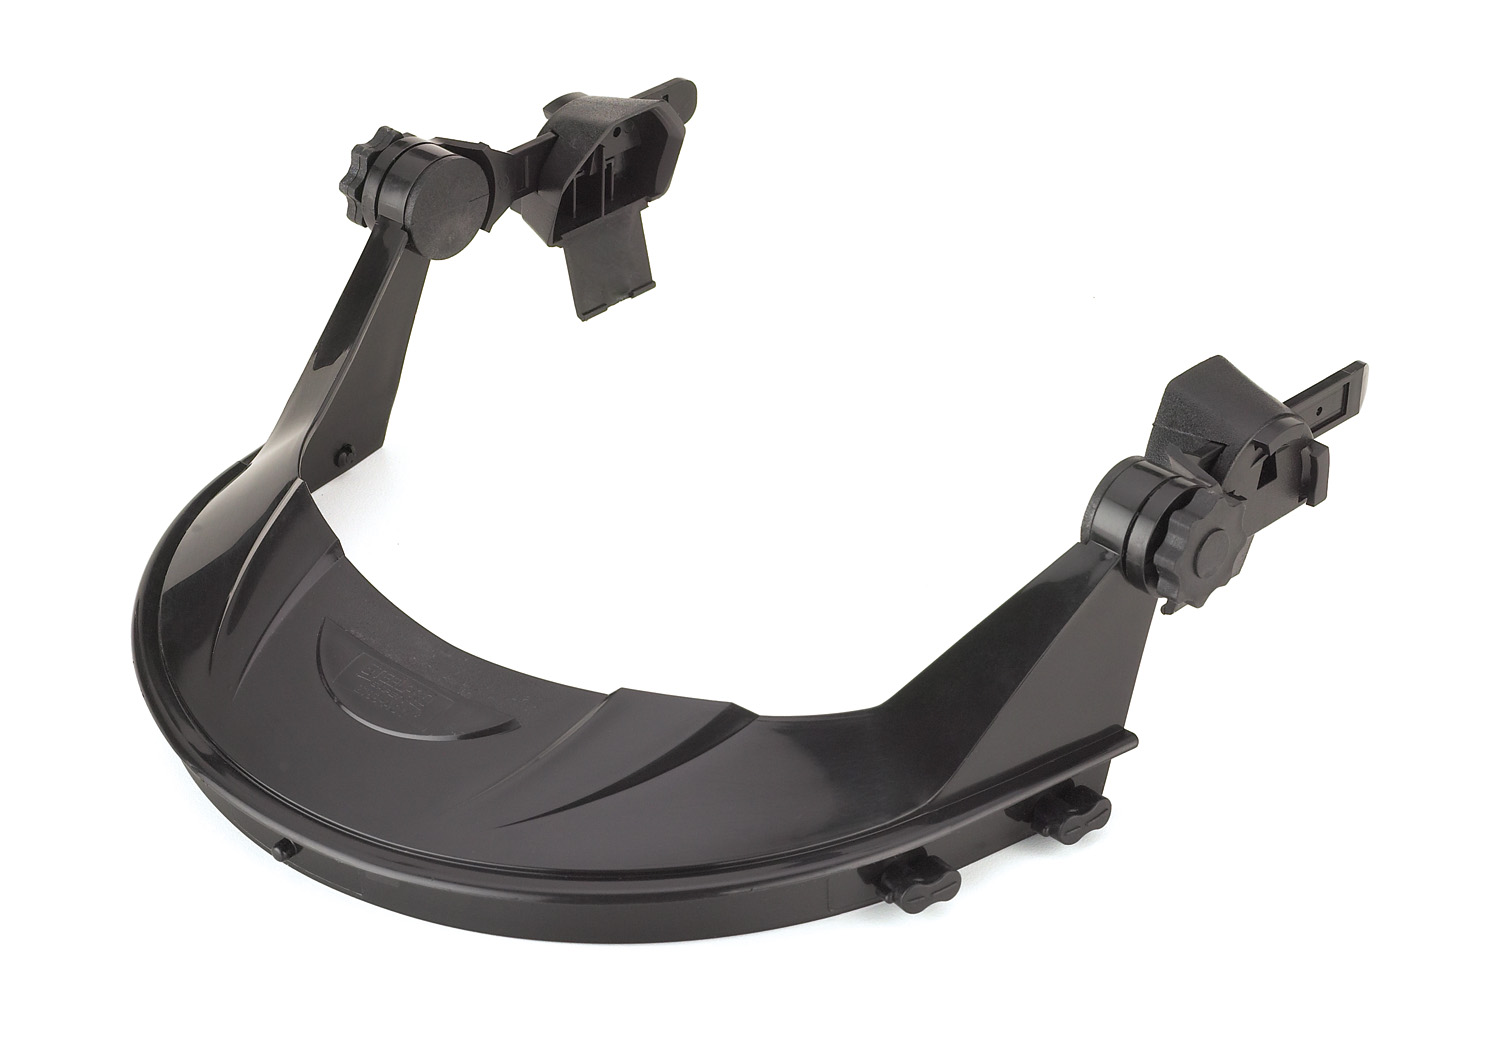 2188-ACV Protecção Ocular Ecrã facial - Linha Volt Adaptador para capacete Volt